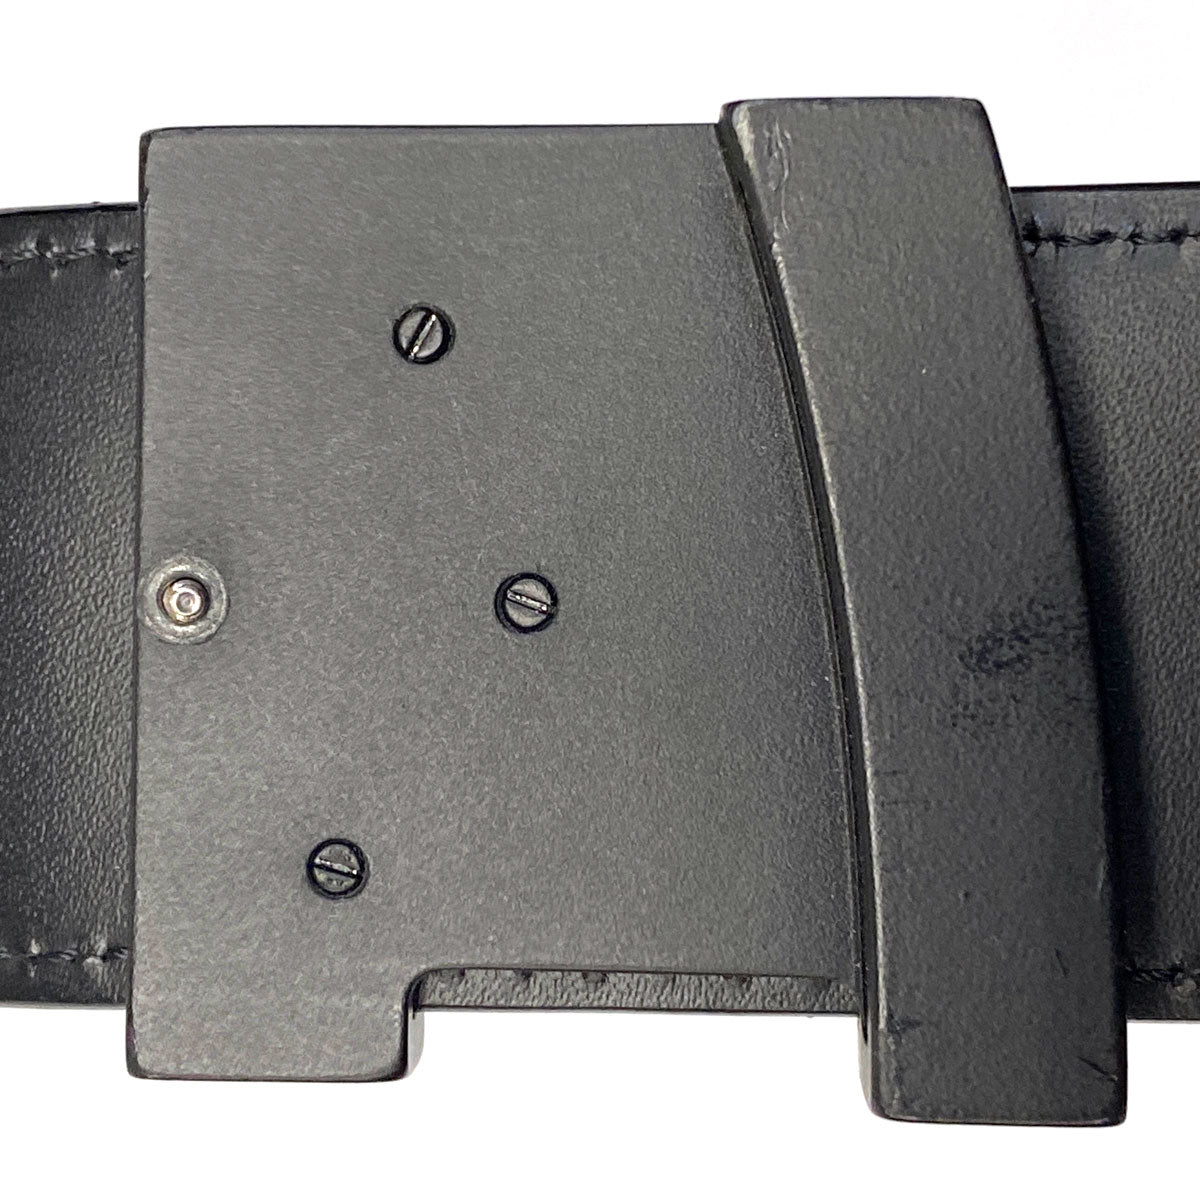 Louis Vuitton LV Initiales 40mm Reversible Belt Black Grey Leather. Size 90 cm